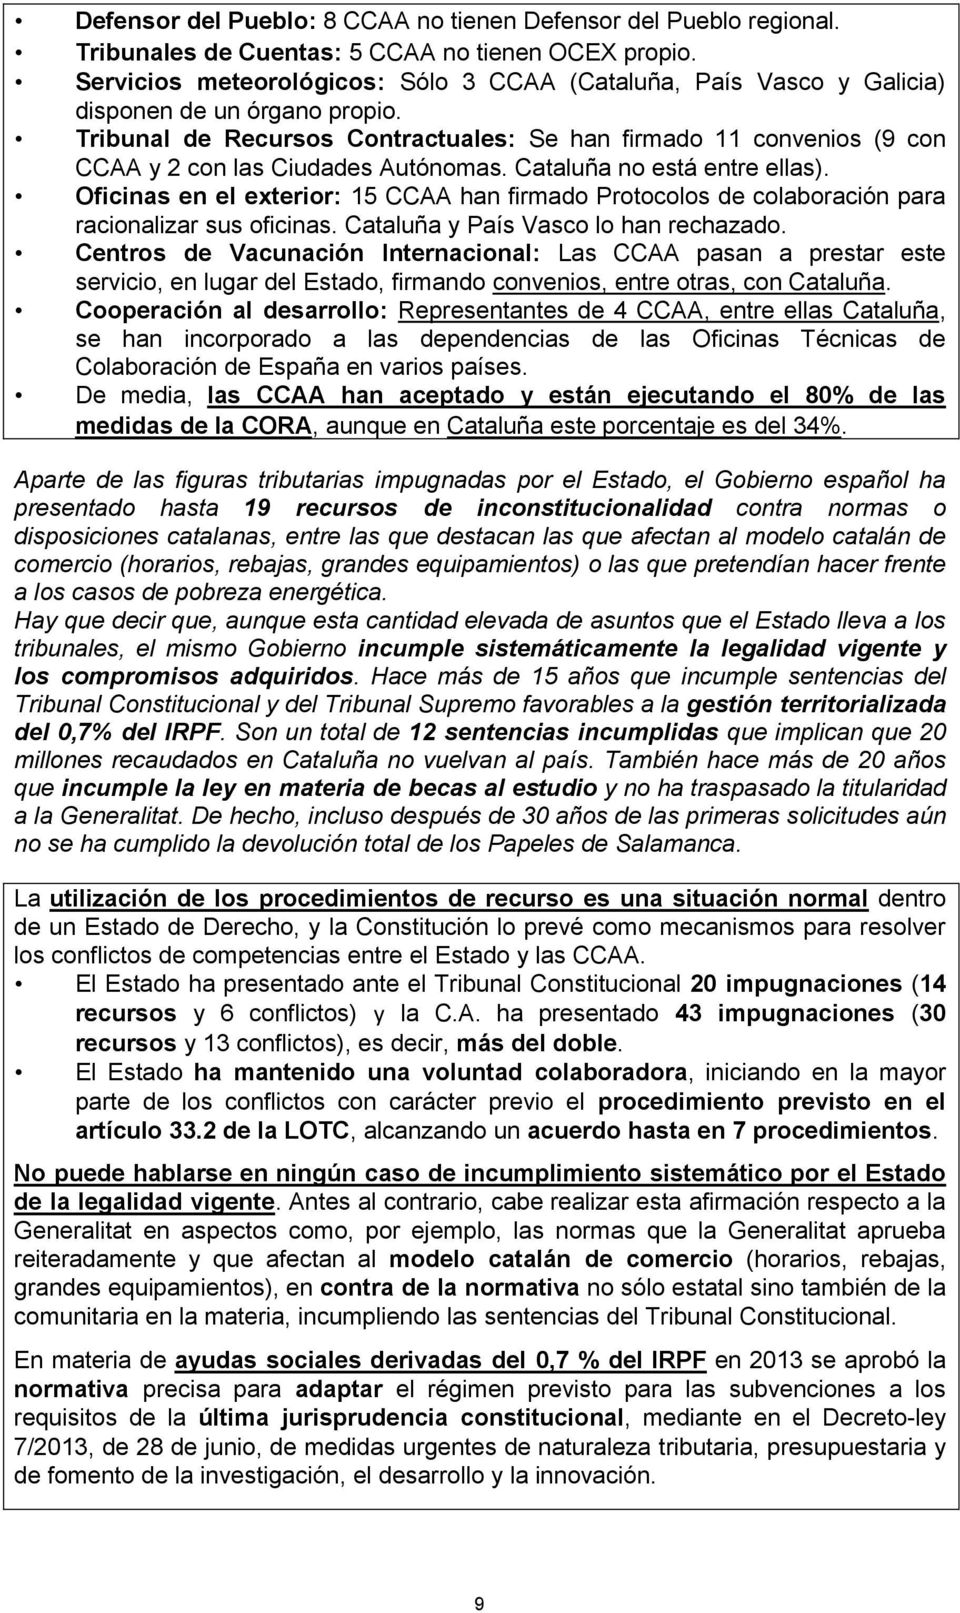 Tribunal de Recursos Contractuales: Se han firmado 11 convenios (9 con CCAA y 2 con las Ciudades Autónomas. Cataluña no está entre ellas).